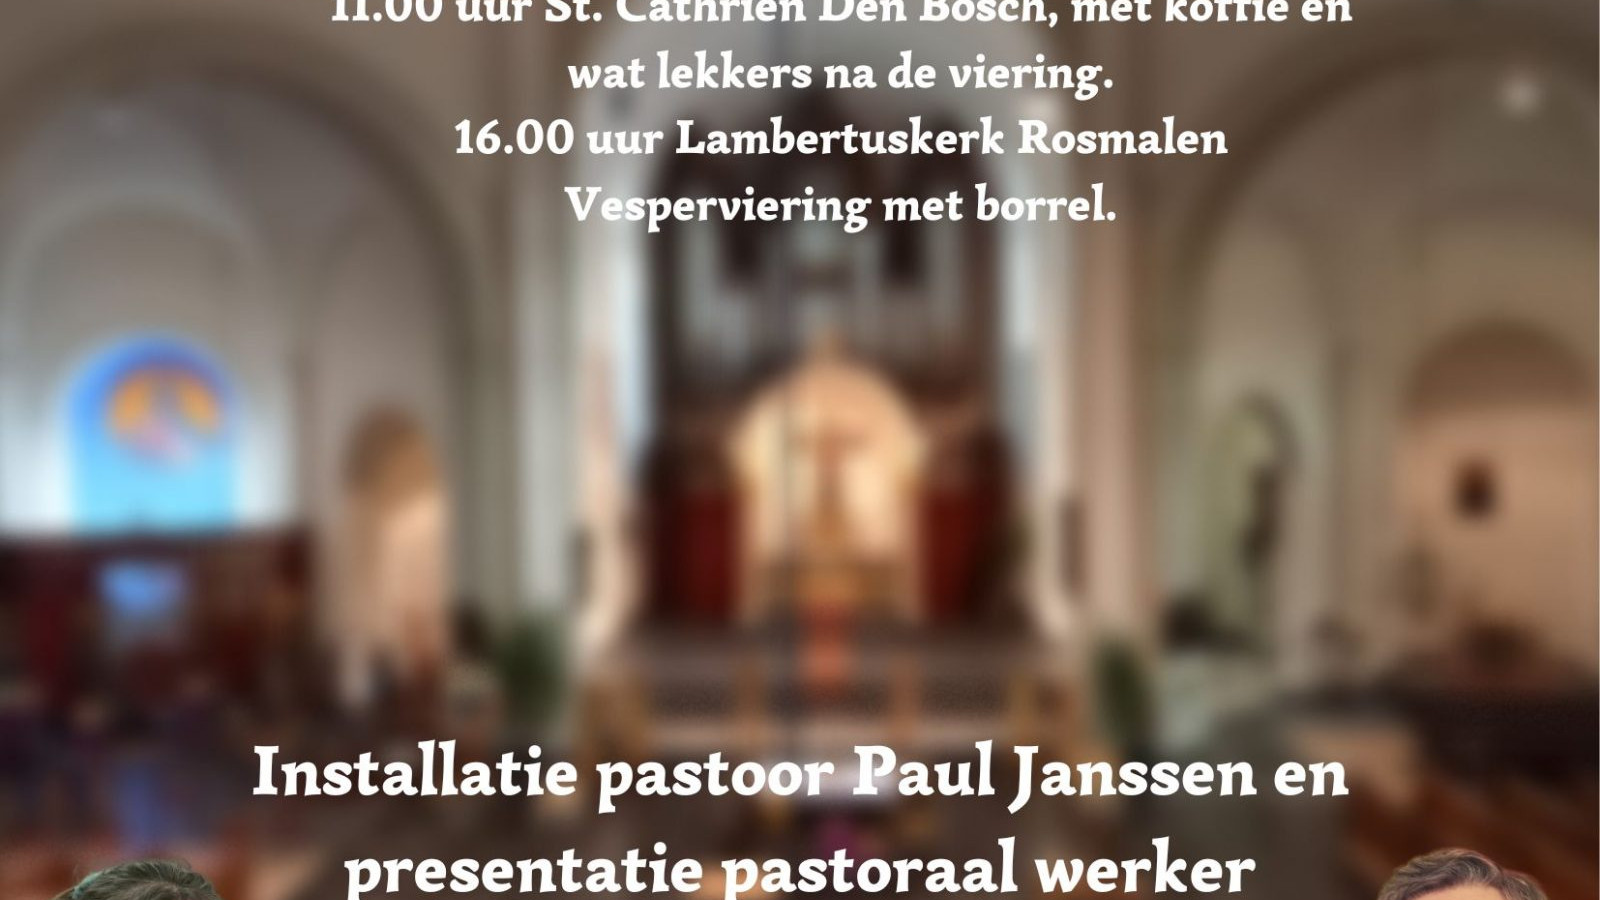 Installatie pastoor Paul Janssen en presentatie pastoraal werker Johanneke Bosman